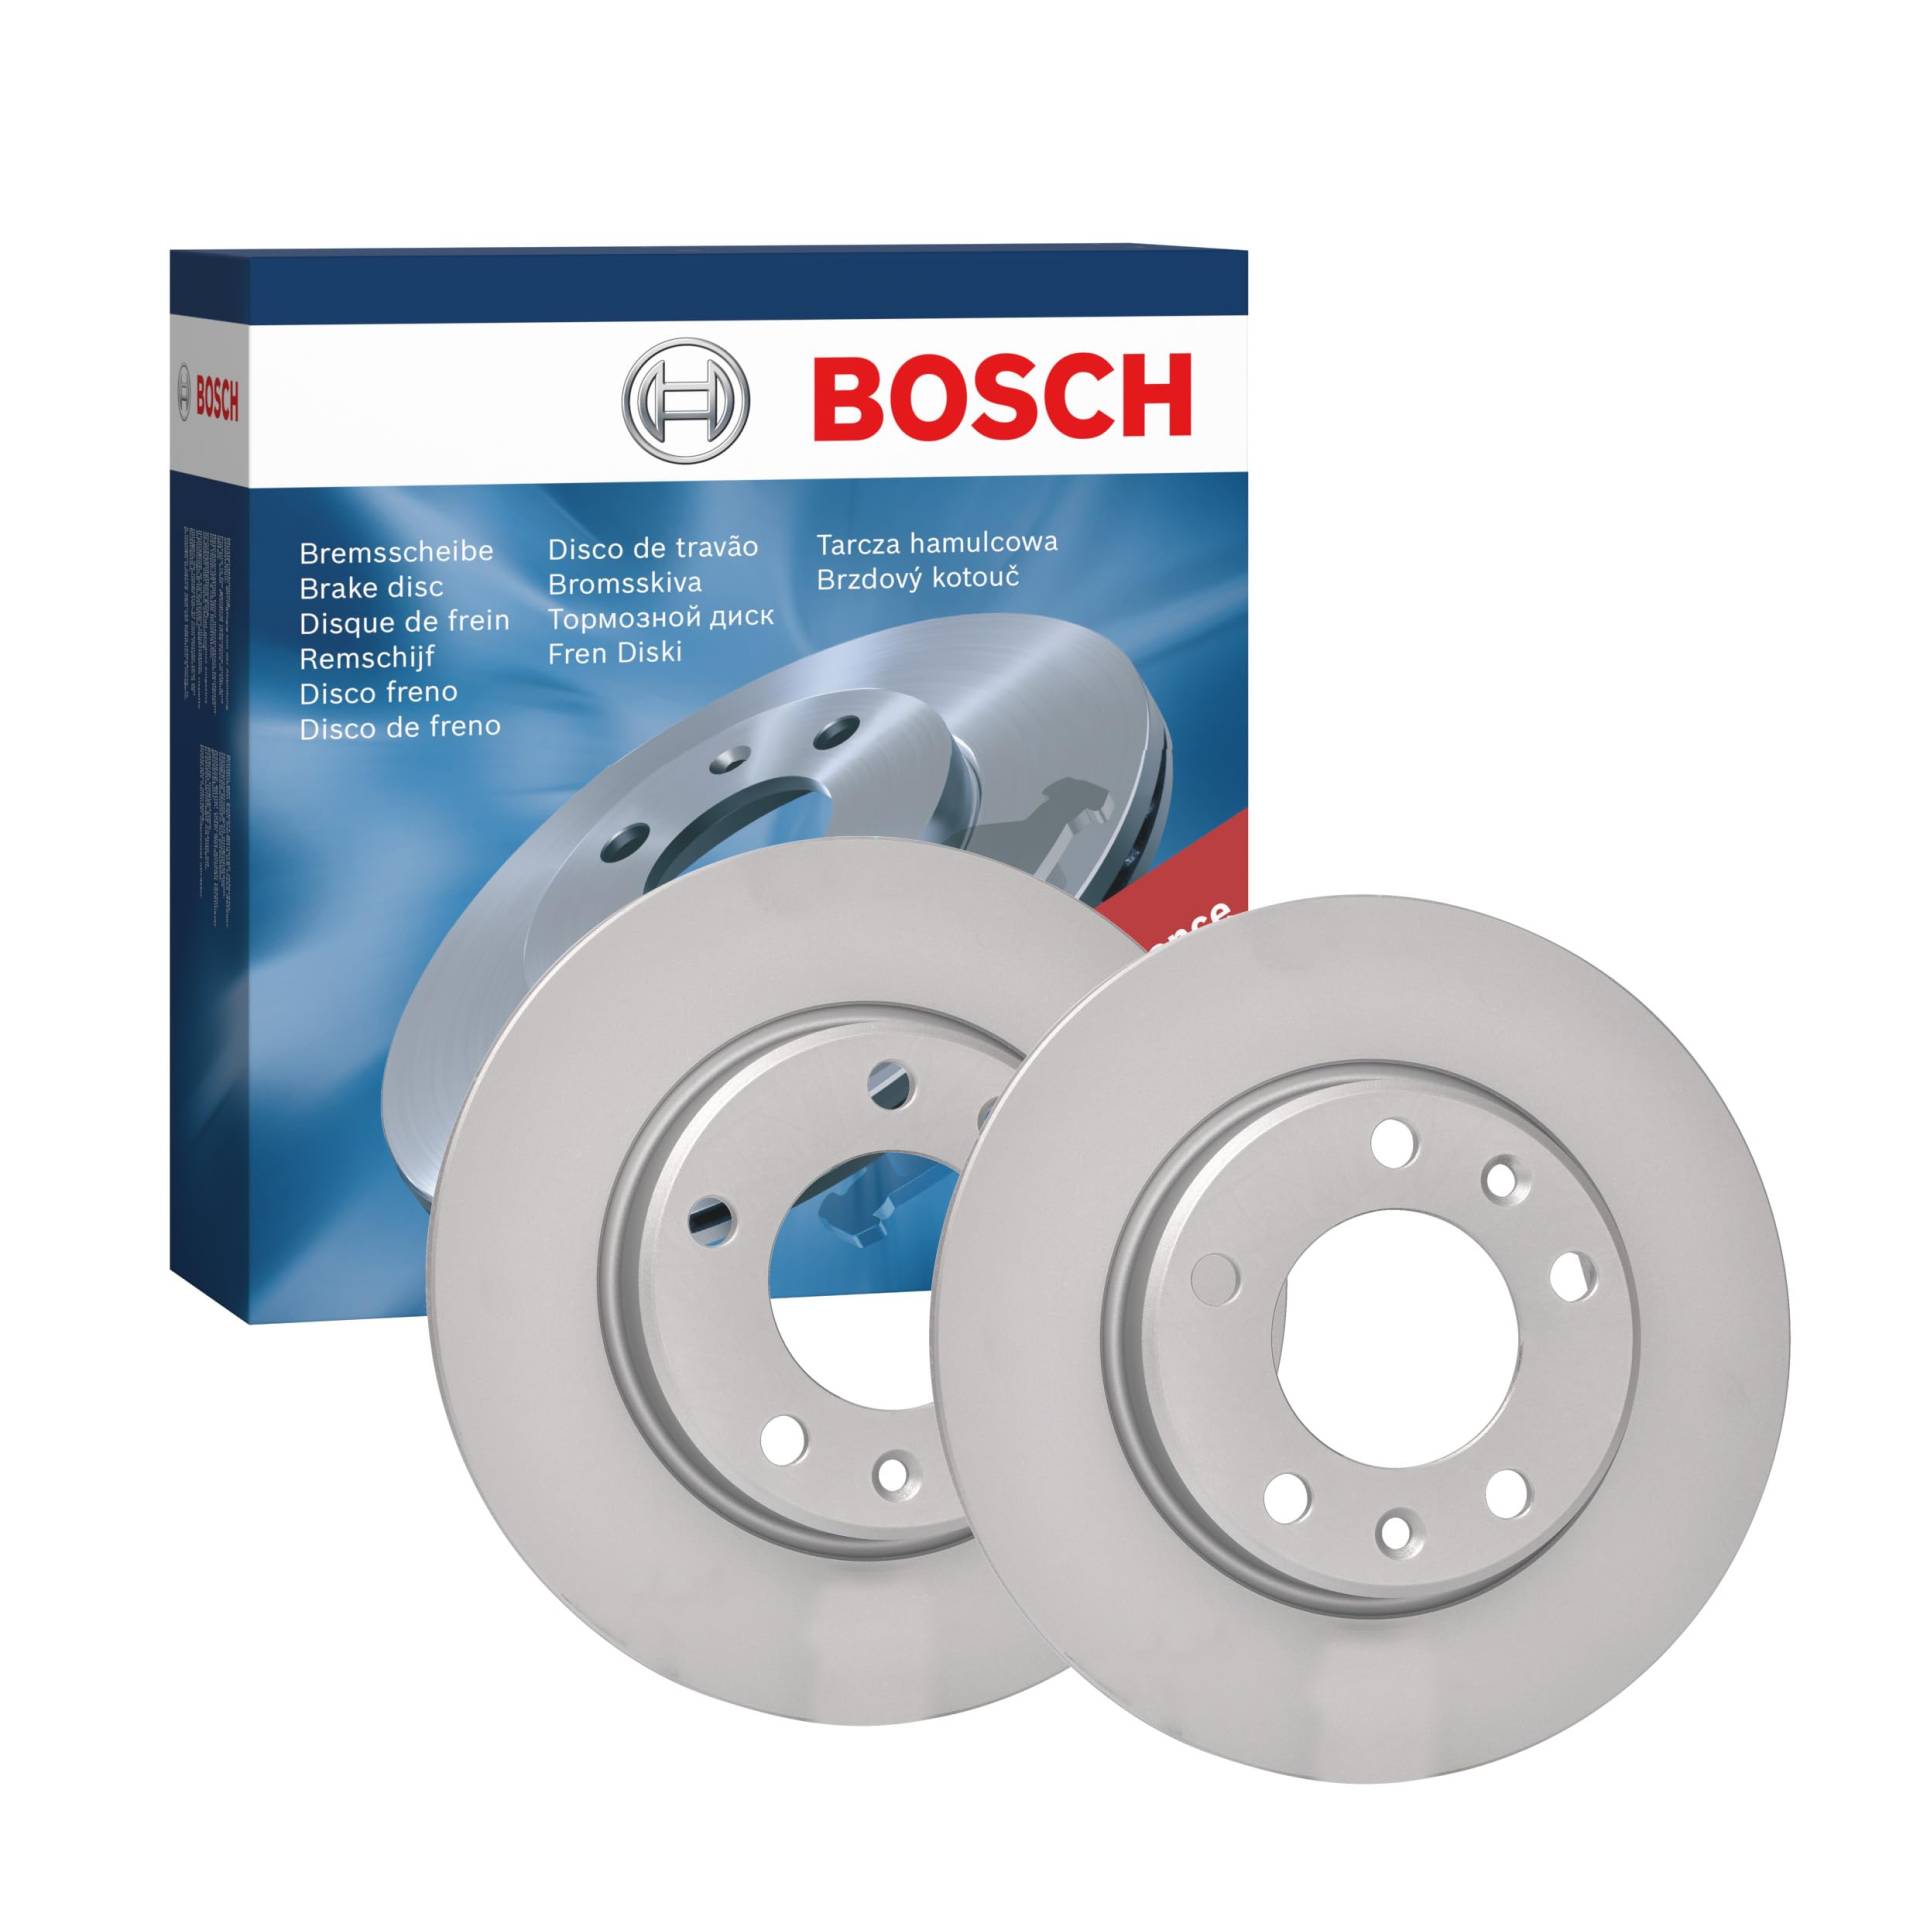 Bosch BD2162 Bremsscheiben - Hinterachse - ECE-R90 Zertifizierung - zwei Bremsscheiben pro Set von Bosch Automotive